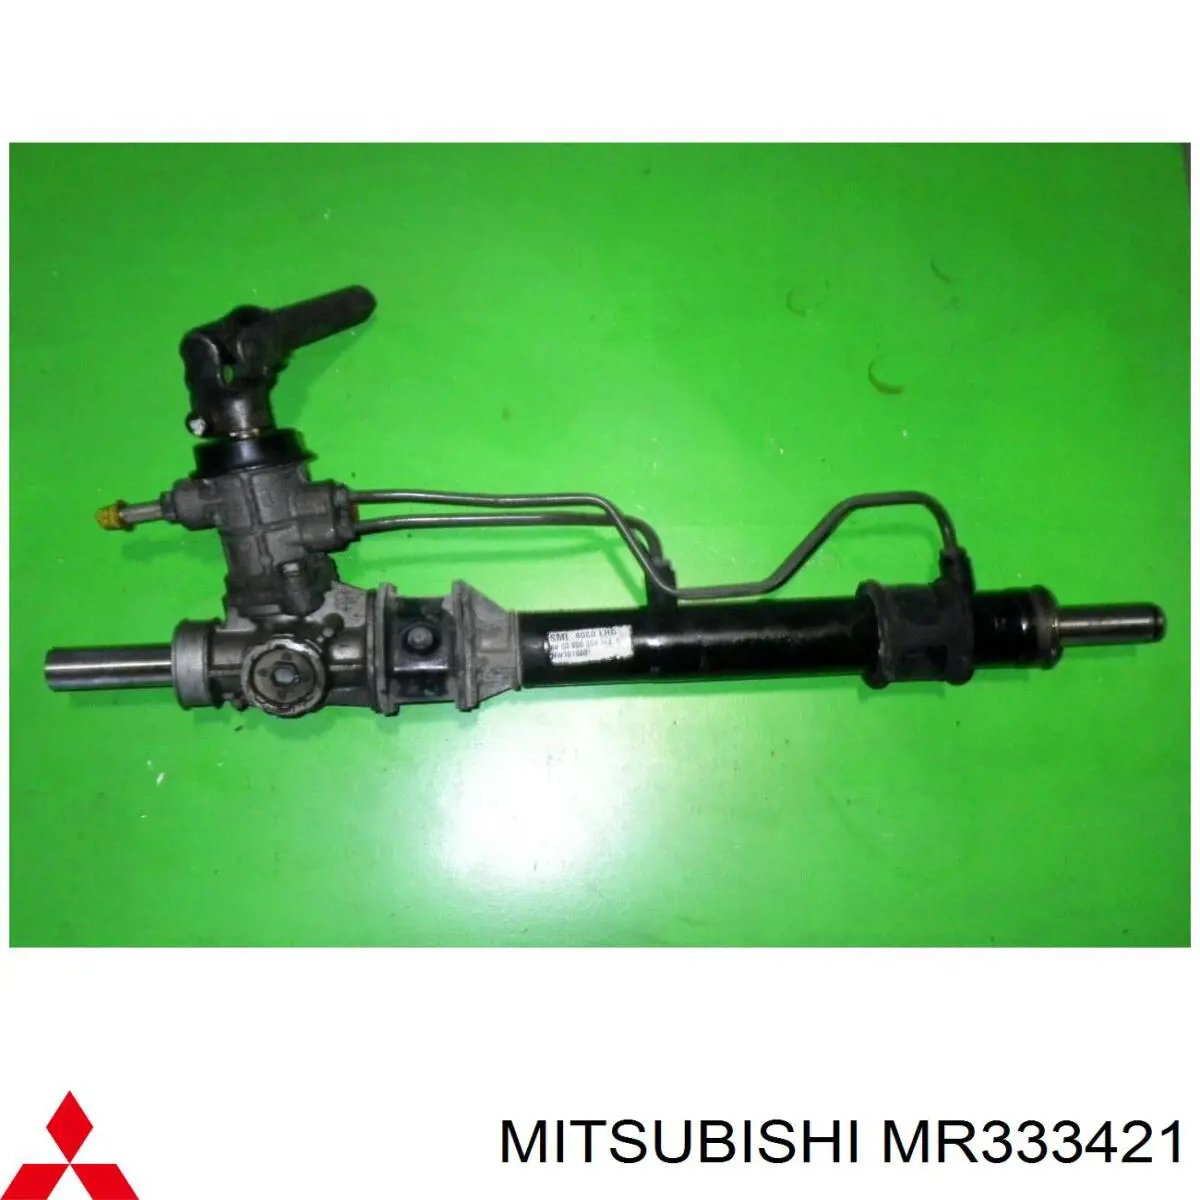 MR333421 Mitsubishi cremallera de dirección